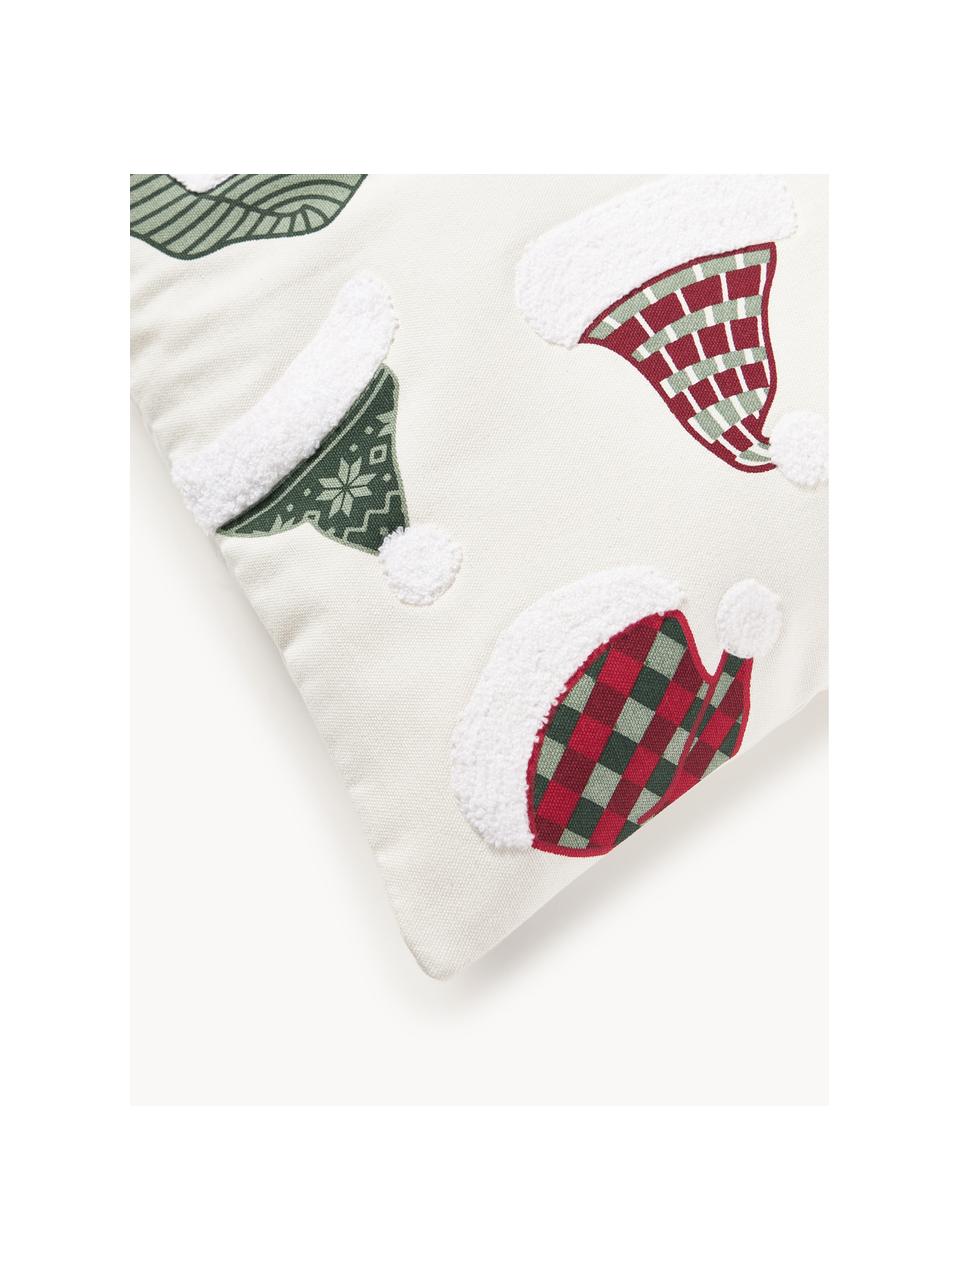 Kussenhoes Derryl met getuft kerstmotief, 100% katoen, Gebroken wit, rood, groen, B 45 x L 45 cm